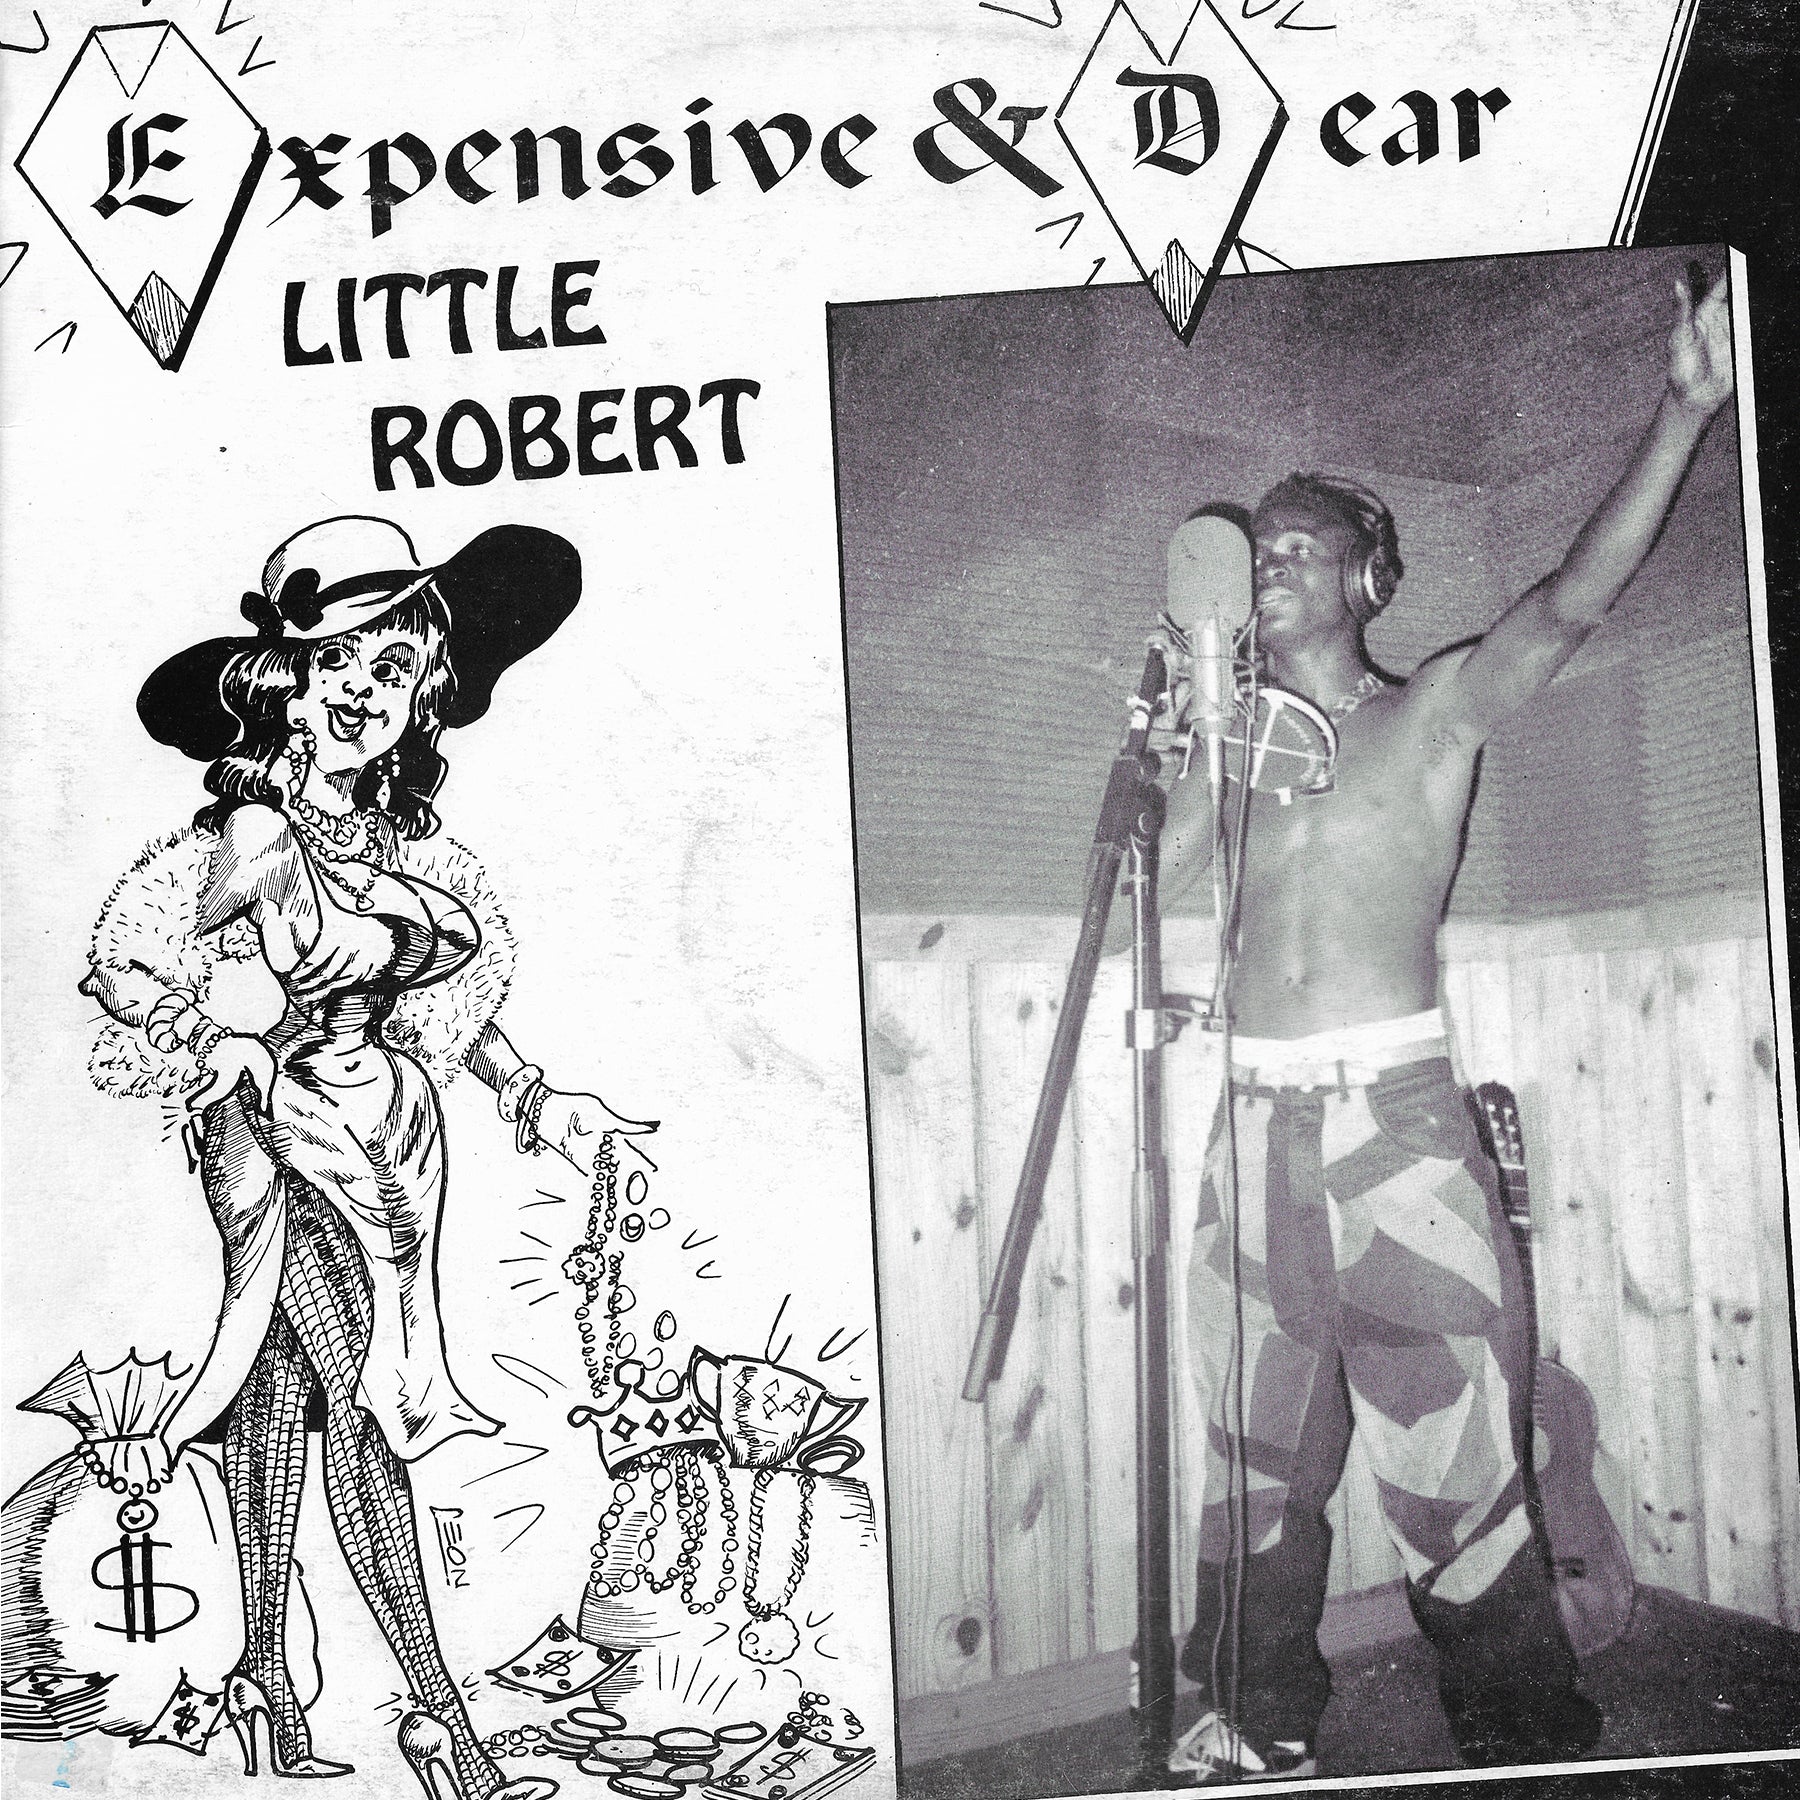 Little Robert - Expensive And Dear